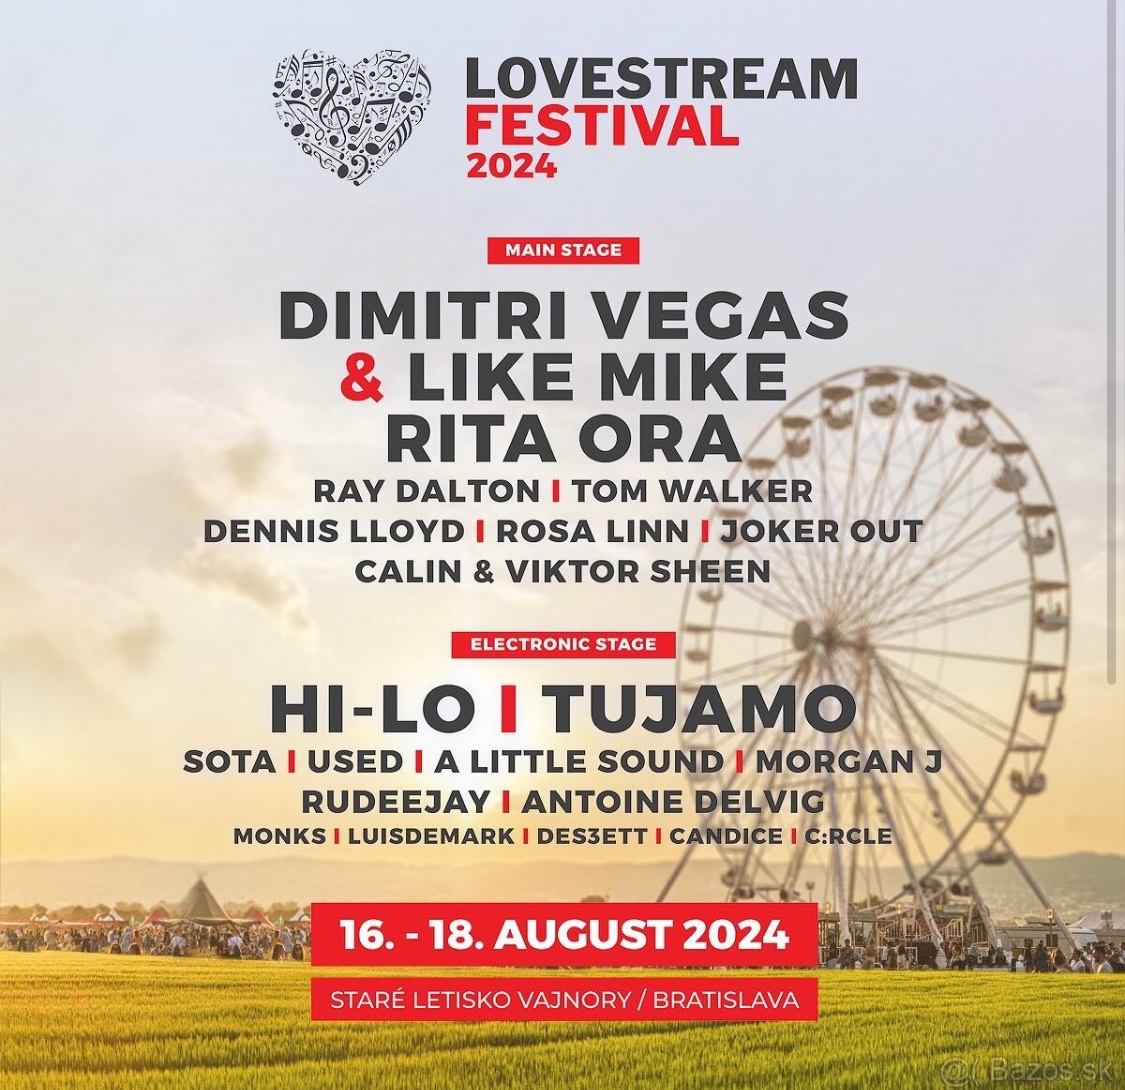 Lovestream - Predám dva 3-dňové lístky